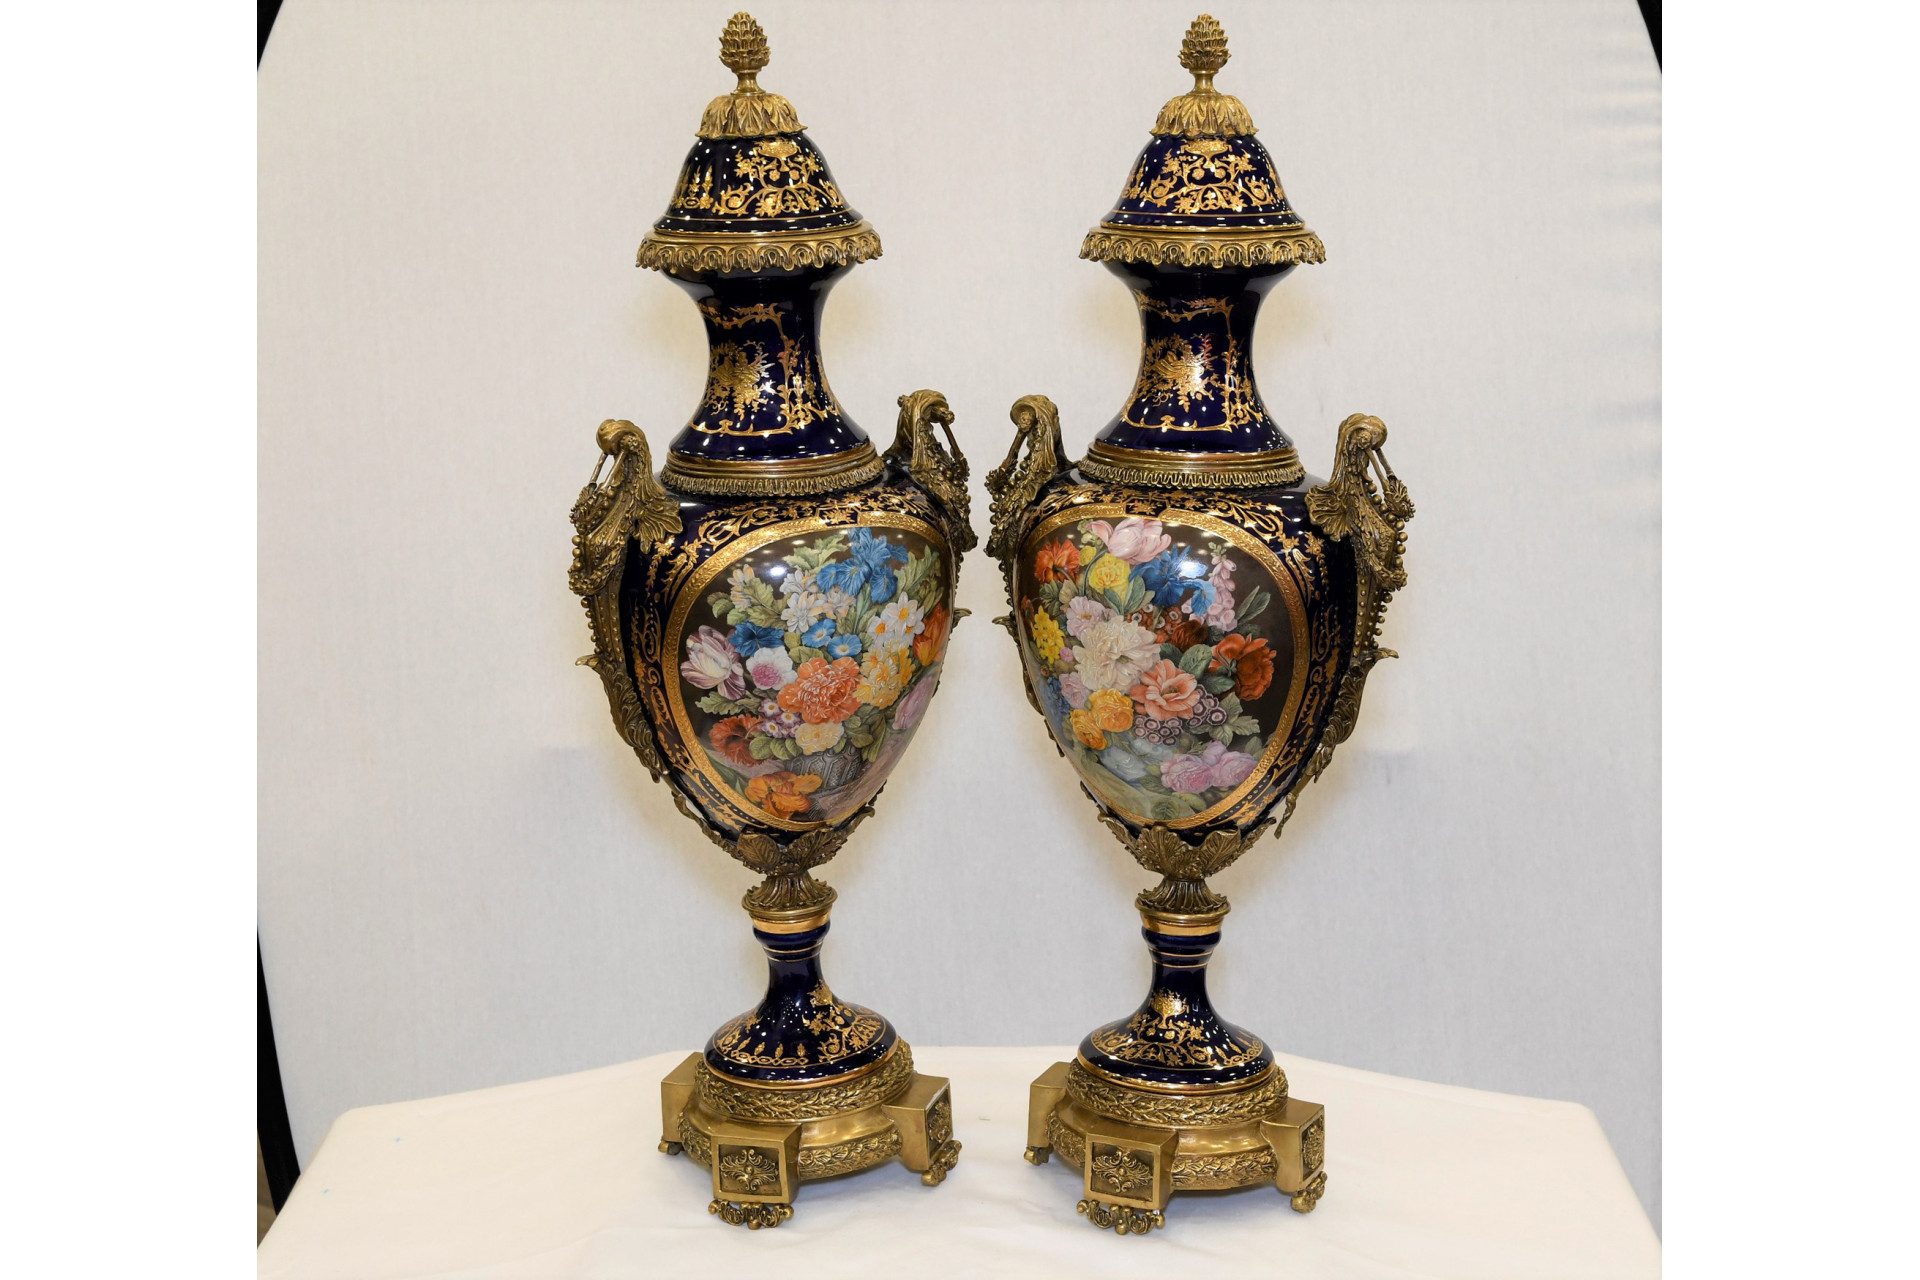 Porcelain Trophy Vase